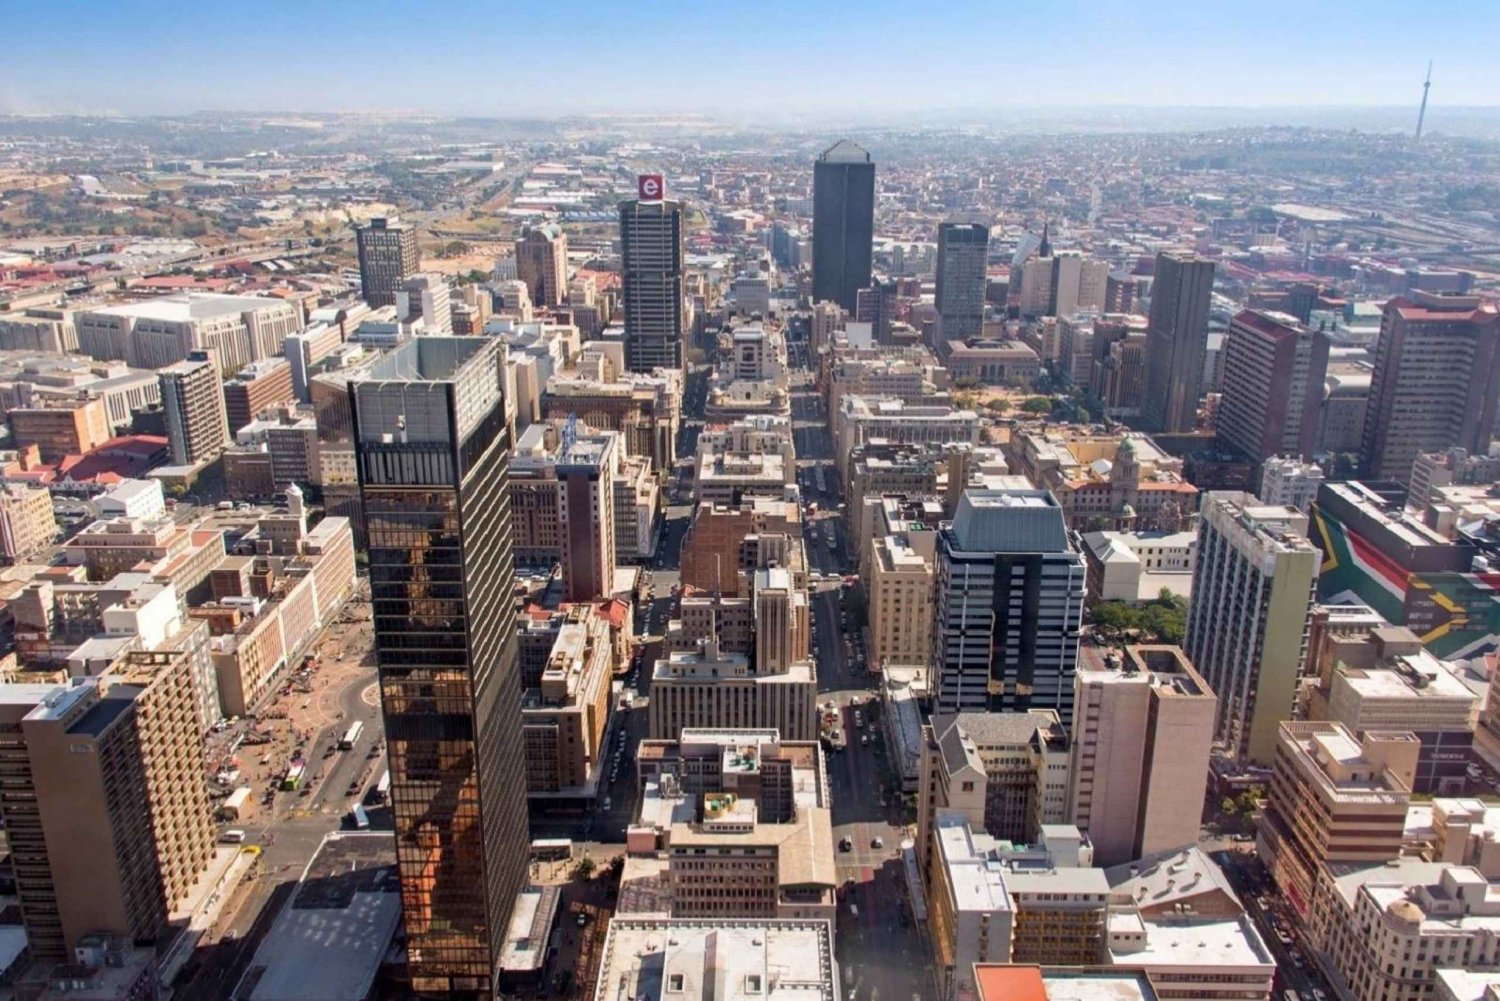 Johannesburg i Soweto: półdniowa wycieczka